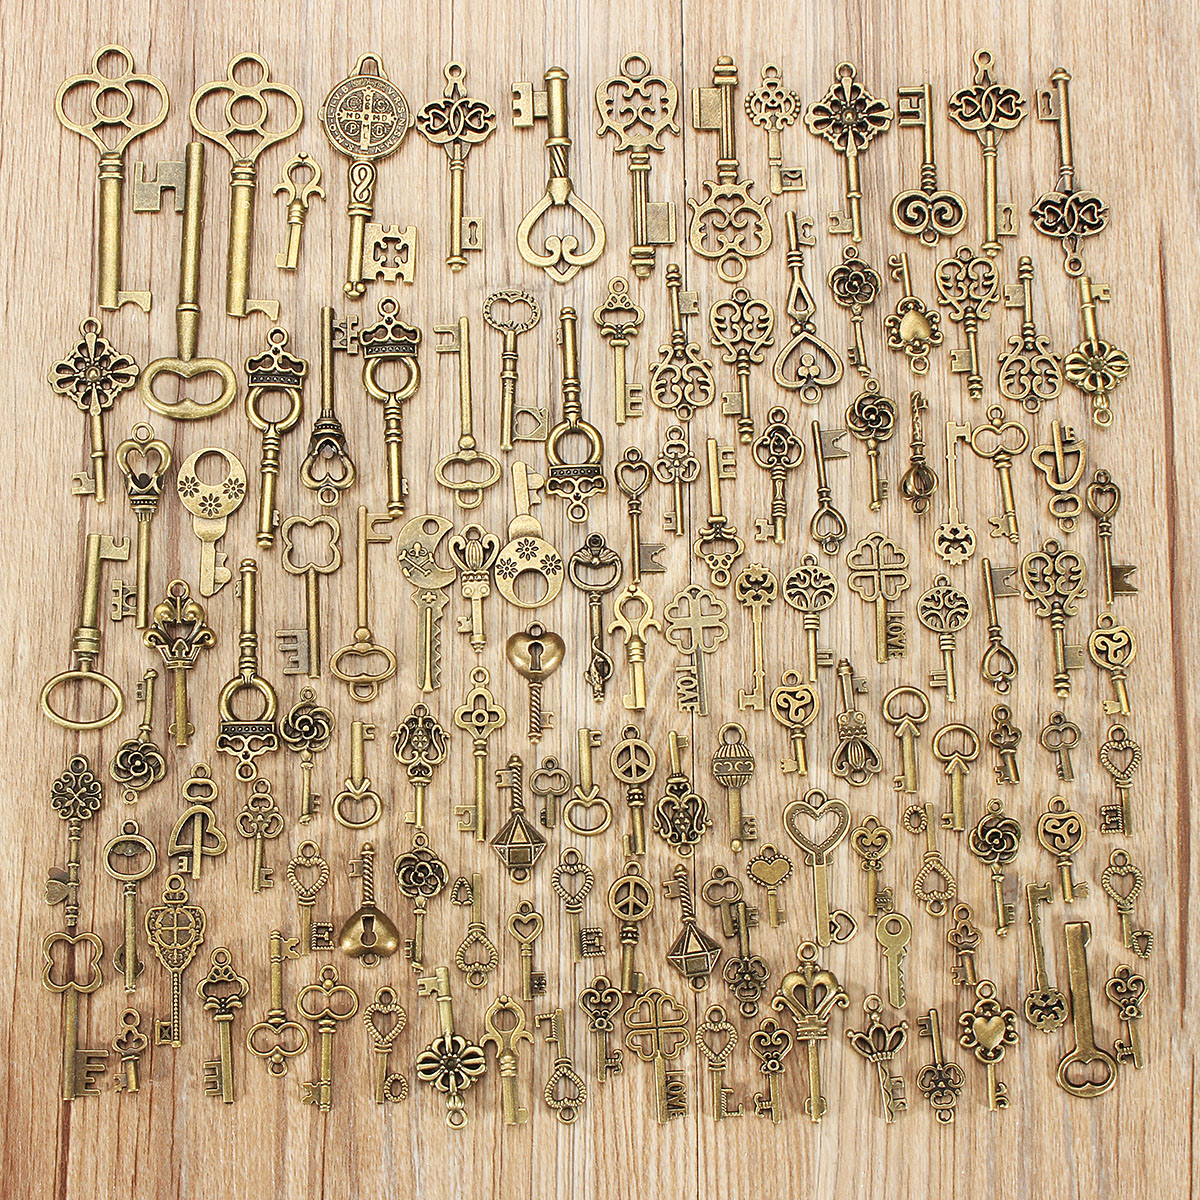 125Pcs-Vintage-Bronze-Key-For-Pendant-Necklace-Bracelet-DIY-Handmade-Accessories-Decoration-1192644-3